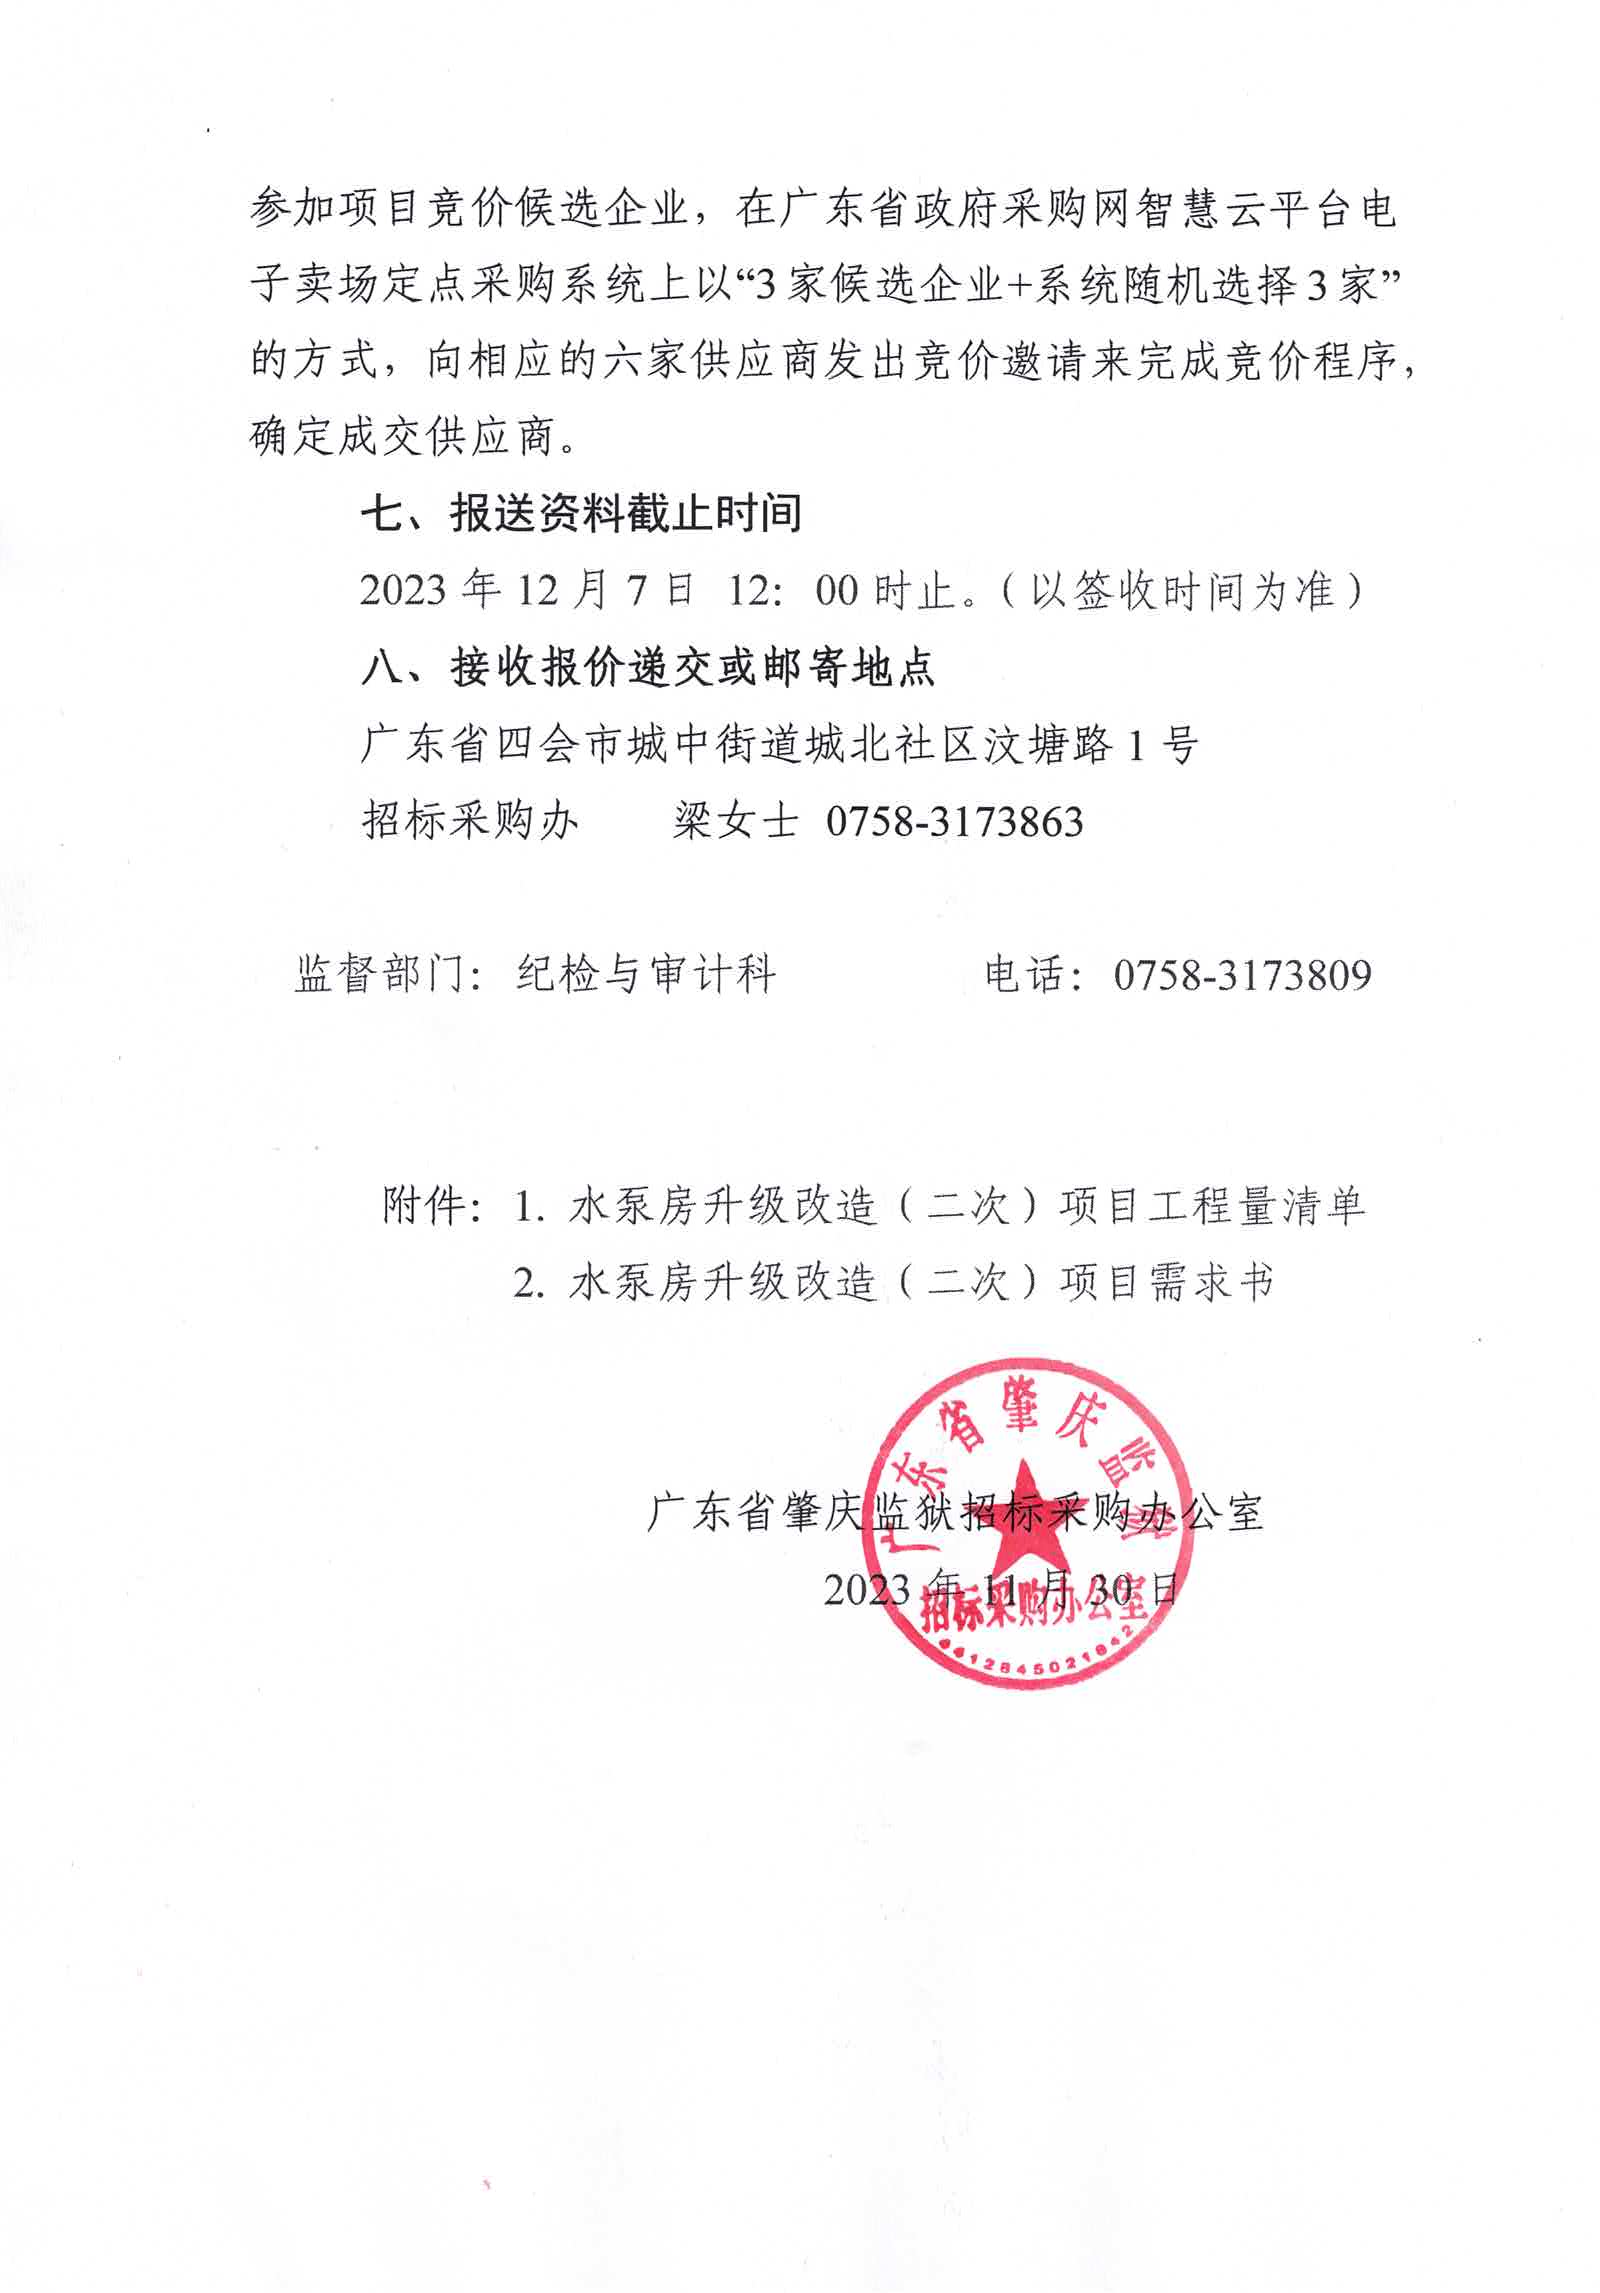 广东省肇庆监狱水泵房升级改造（二次）项目采购公告3.jpg